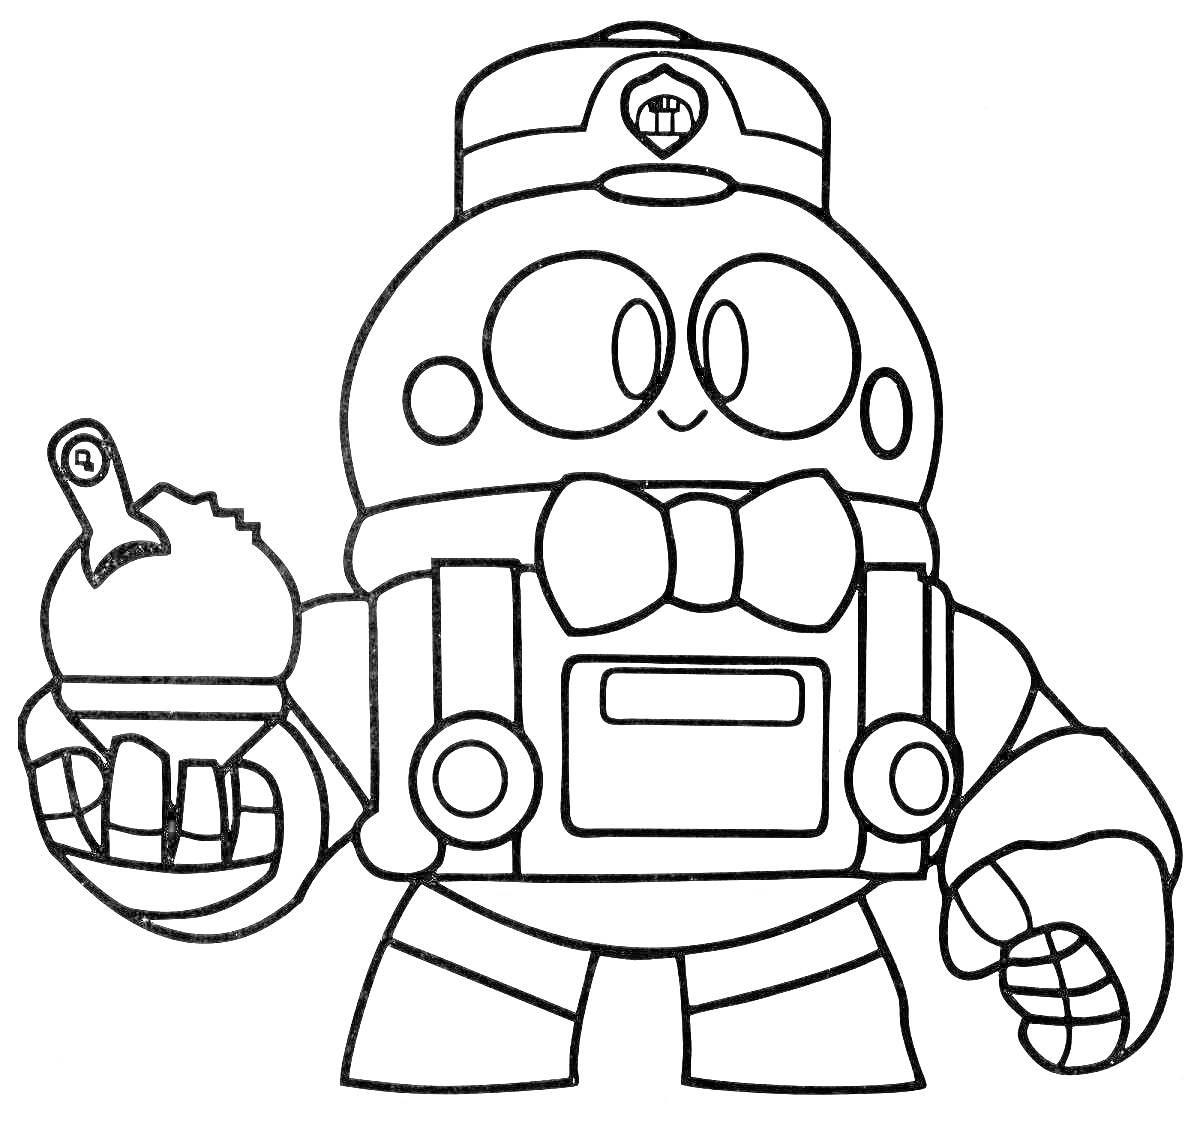 Раскраска Робот с мороженым и микрофоном